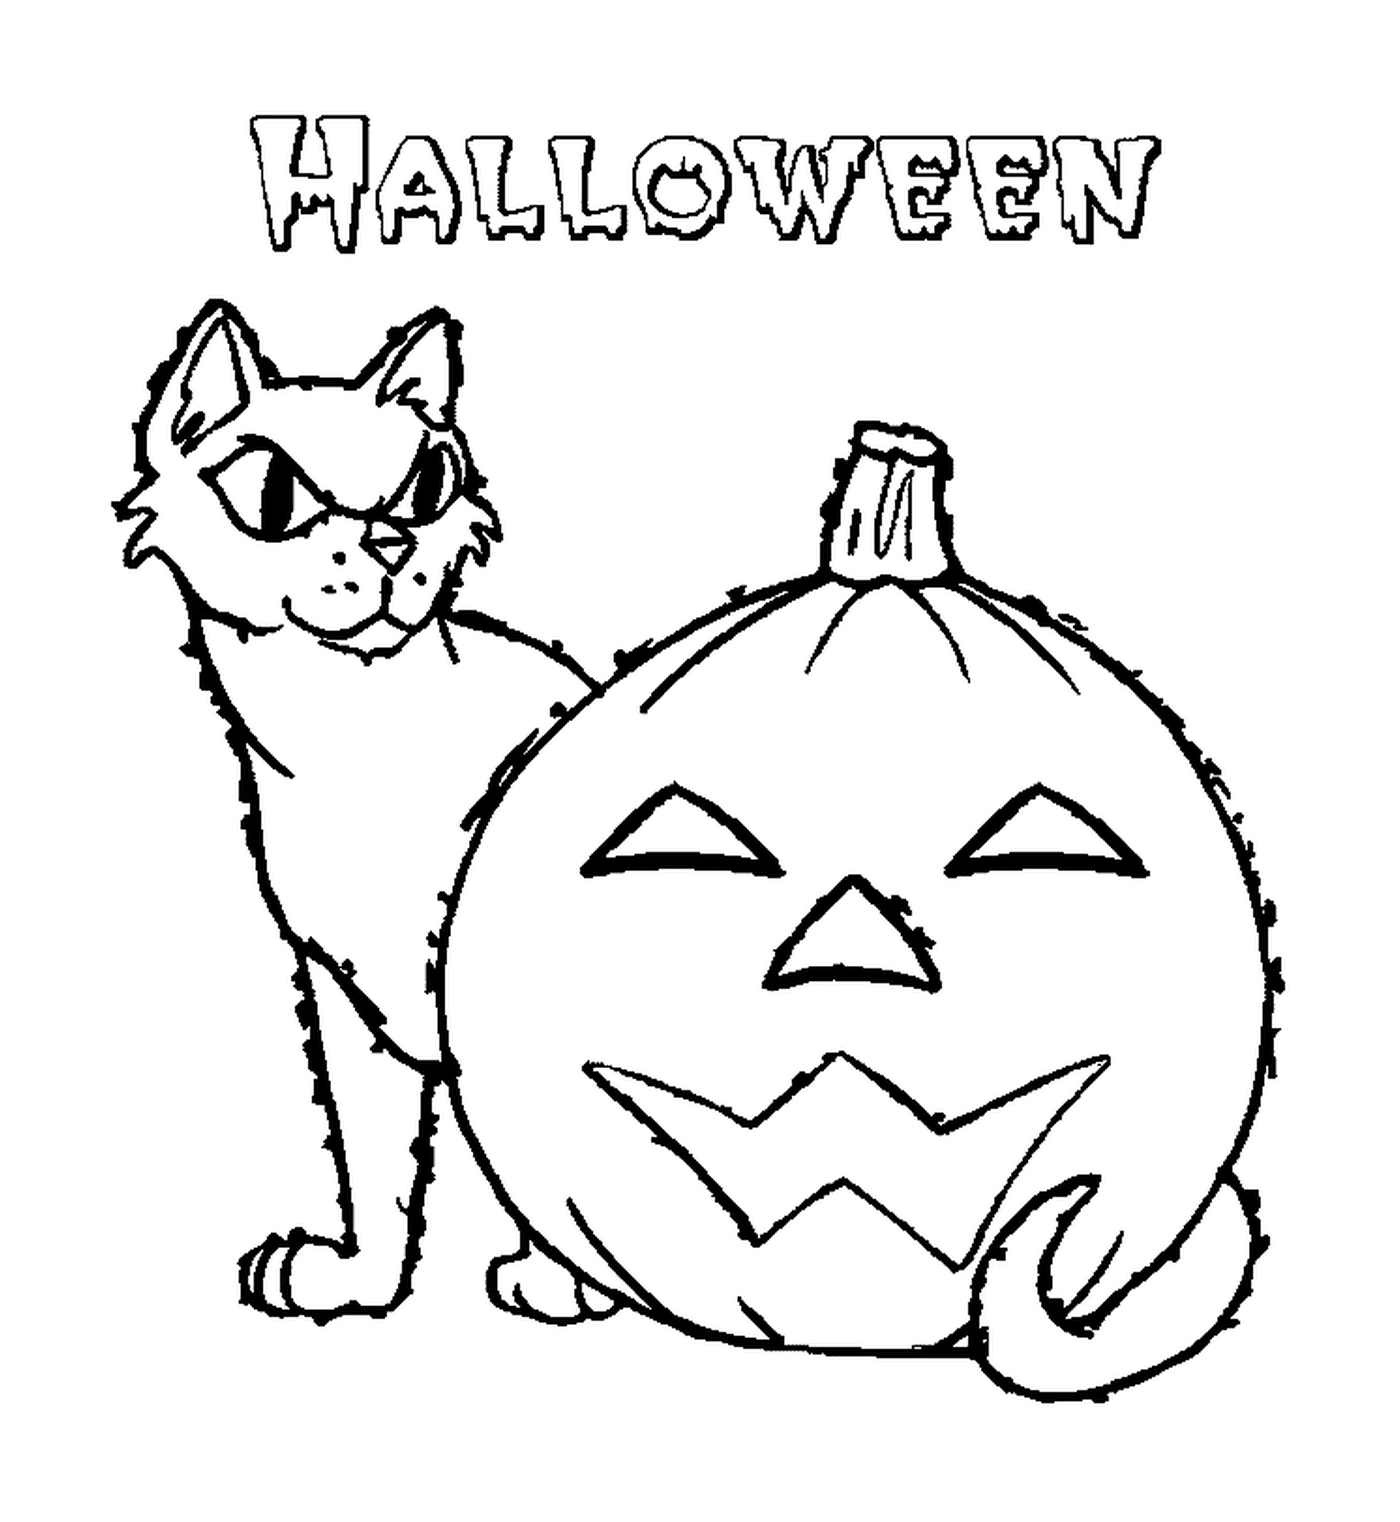  Cat behind a pumpkin 